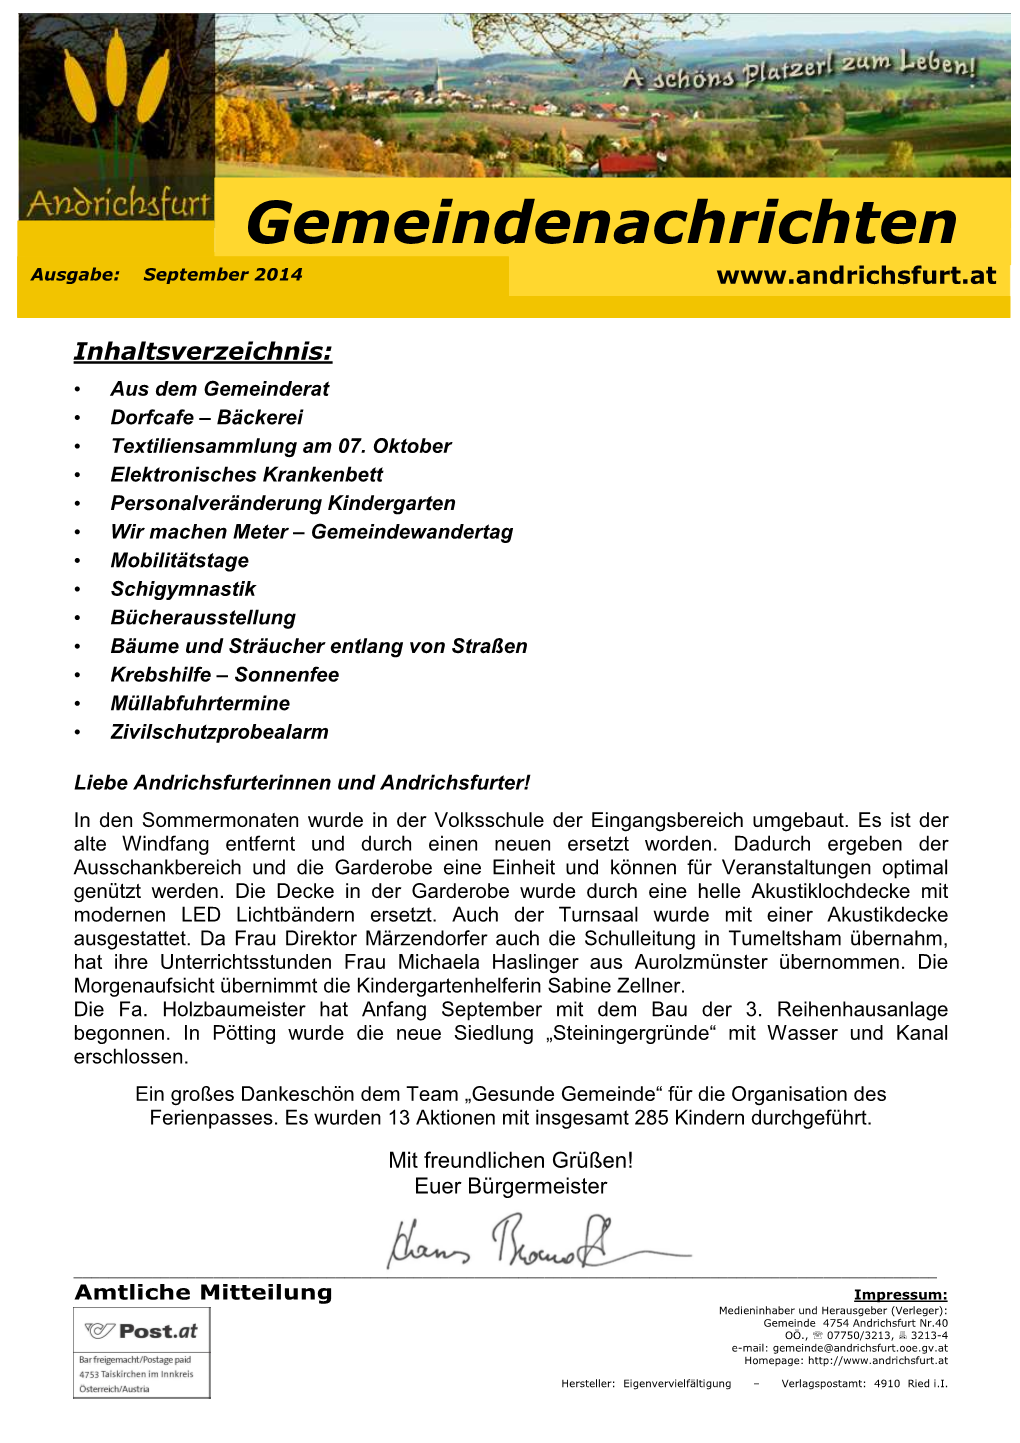 Gemeindenachrichten 2014-09